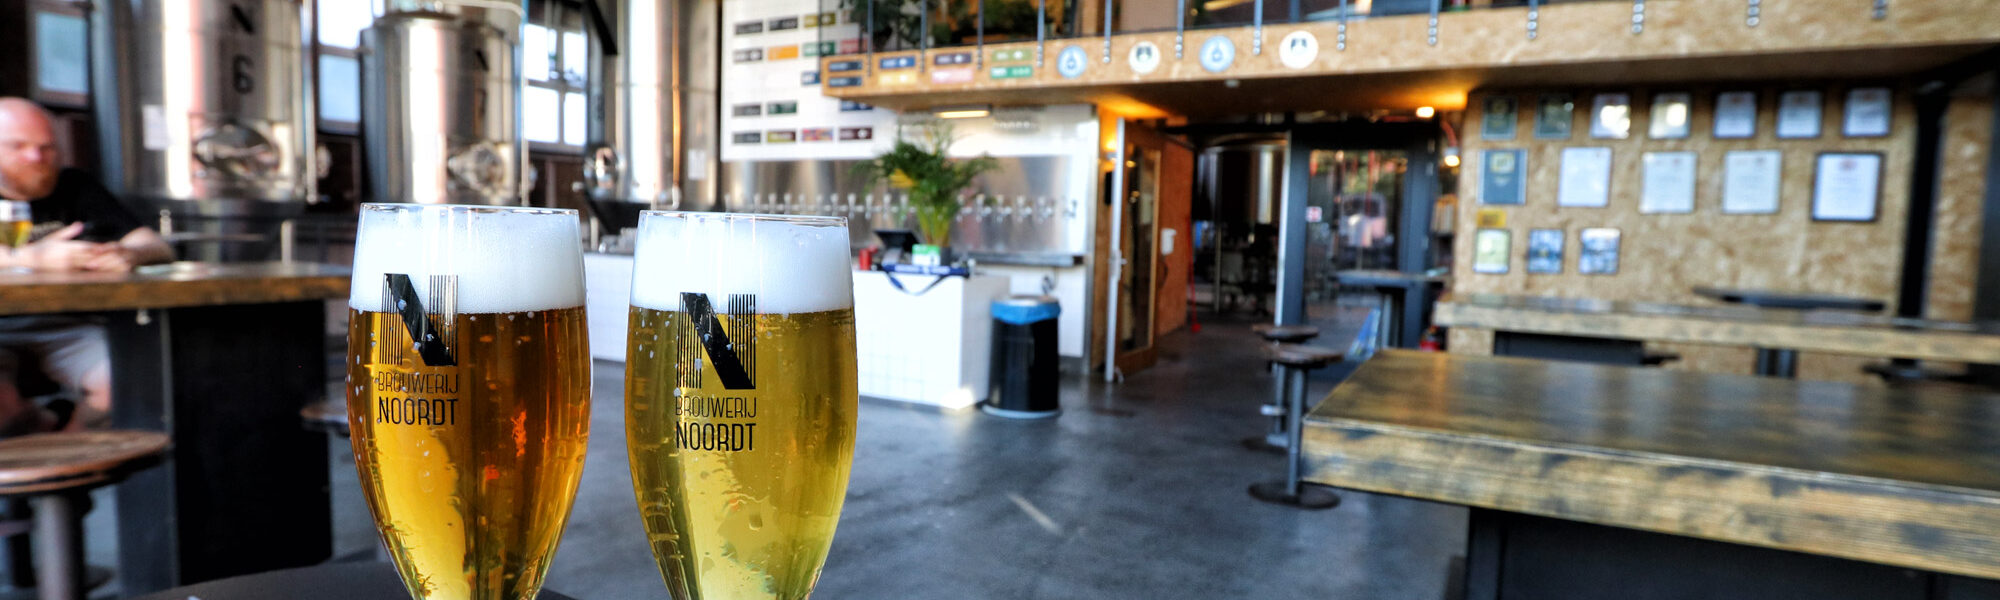 De leukste biercafés in Rotterdam - Brouwerij Noordt